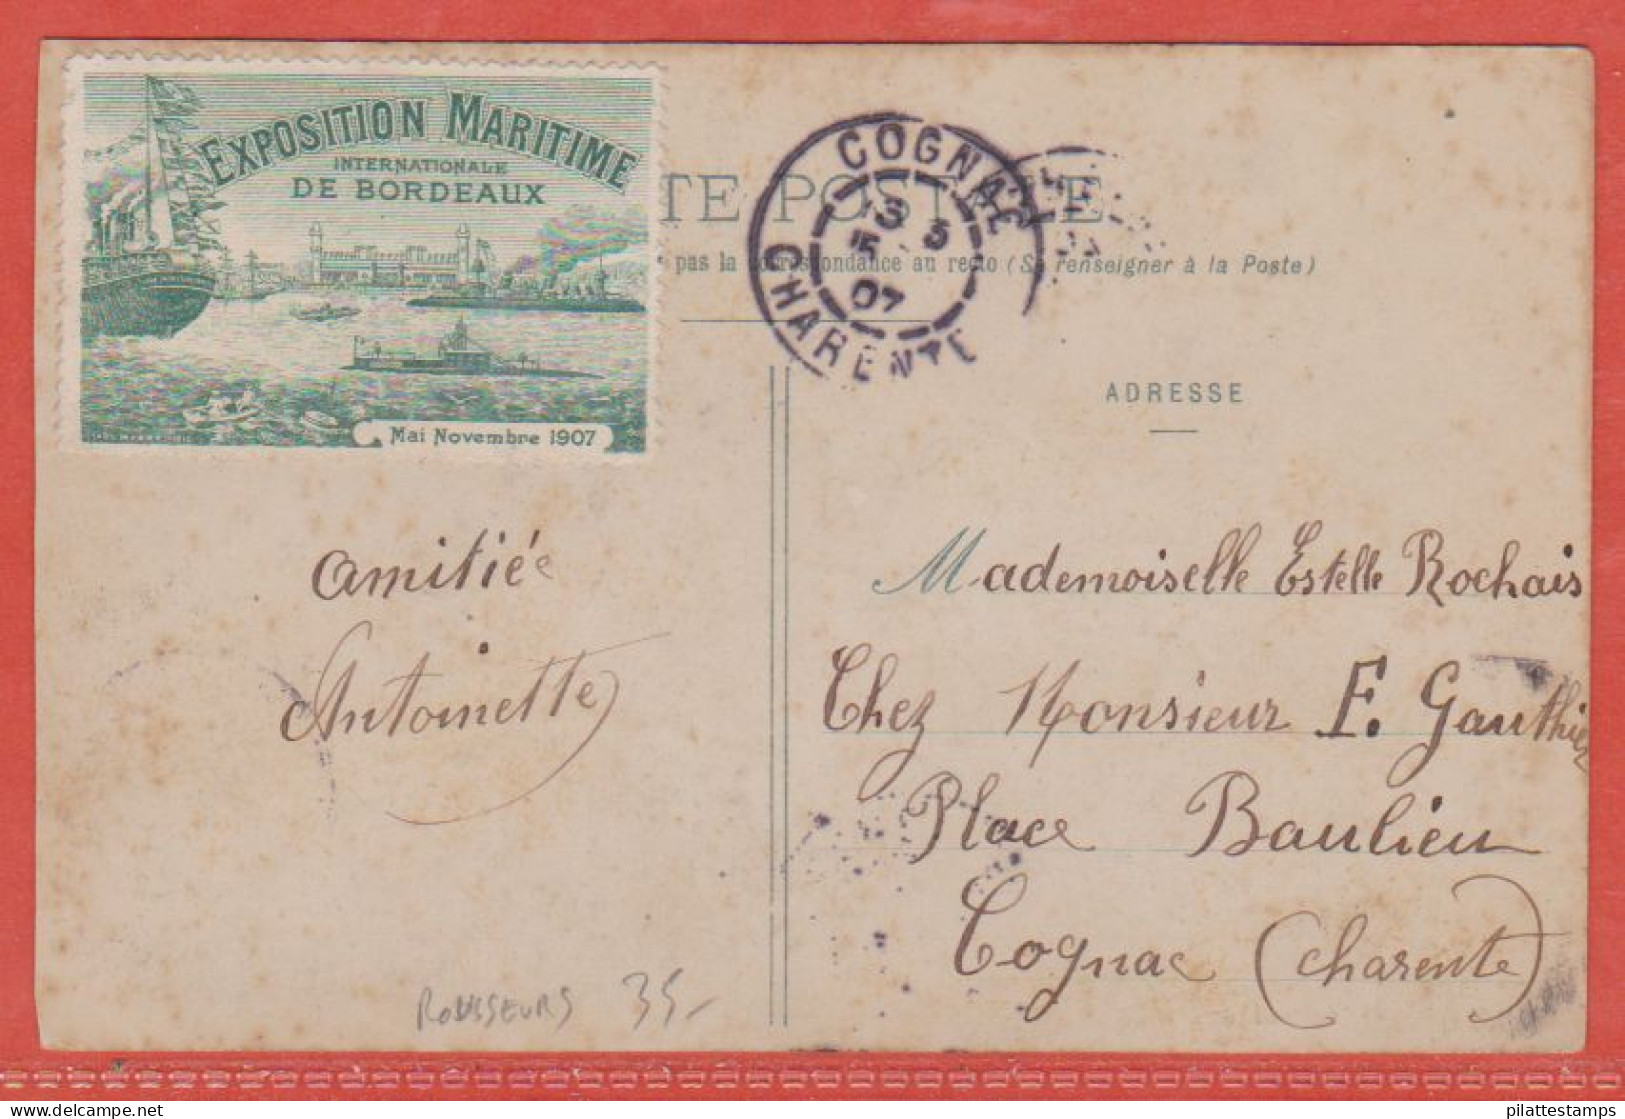 FRANCE VIGNETTE EXPO MARITIME SUR CARTE POSTALE DE 1907 DE BORDEAUX (ROUSSEURS) - Briefmarkenmessen